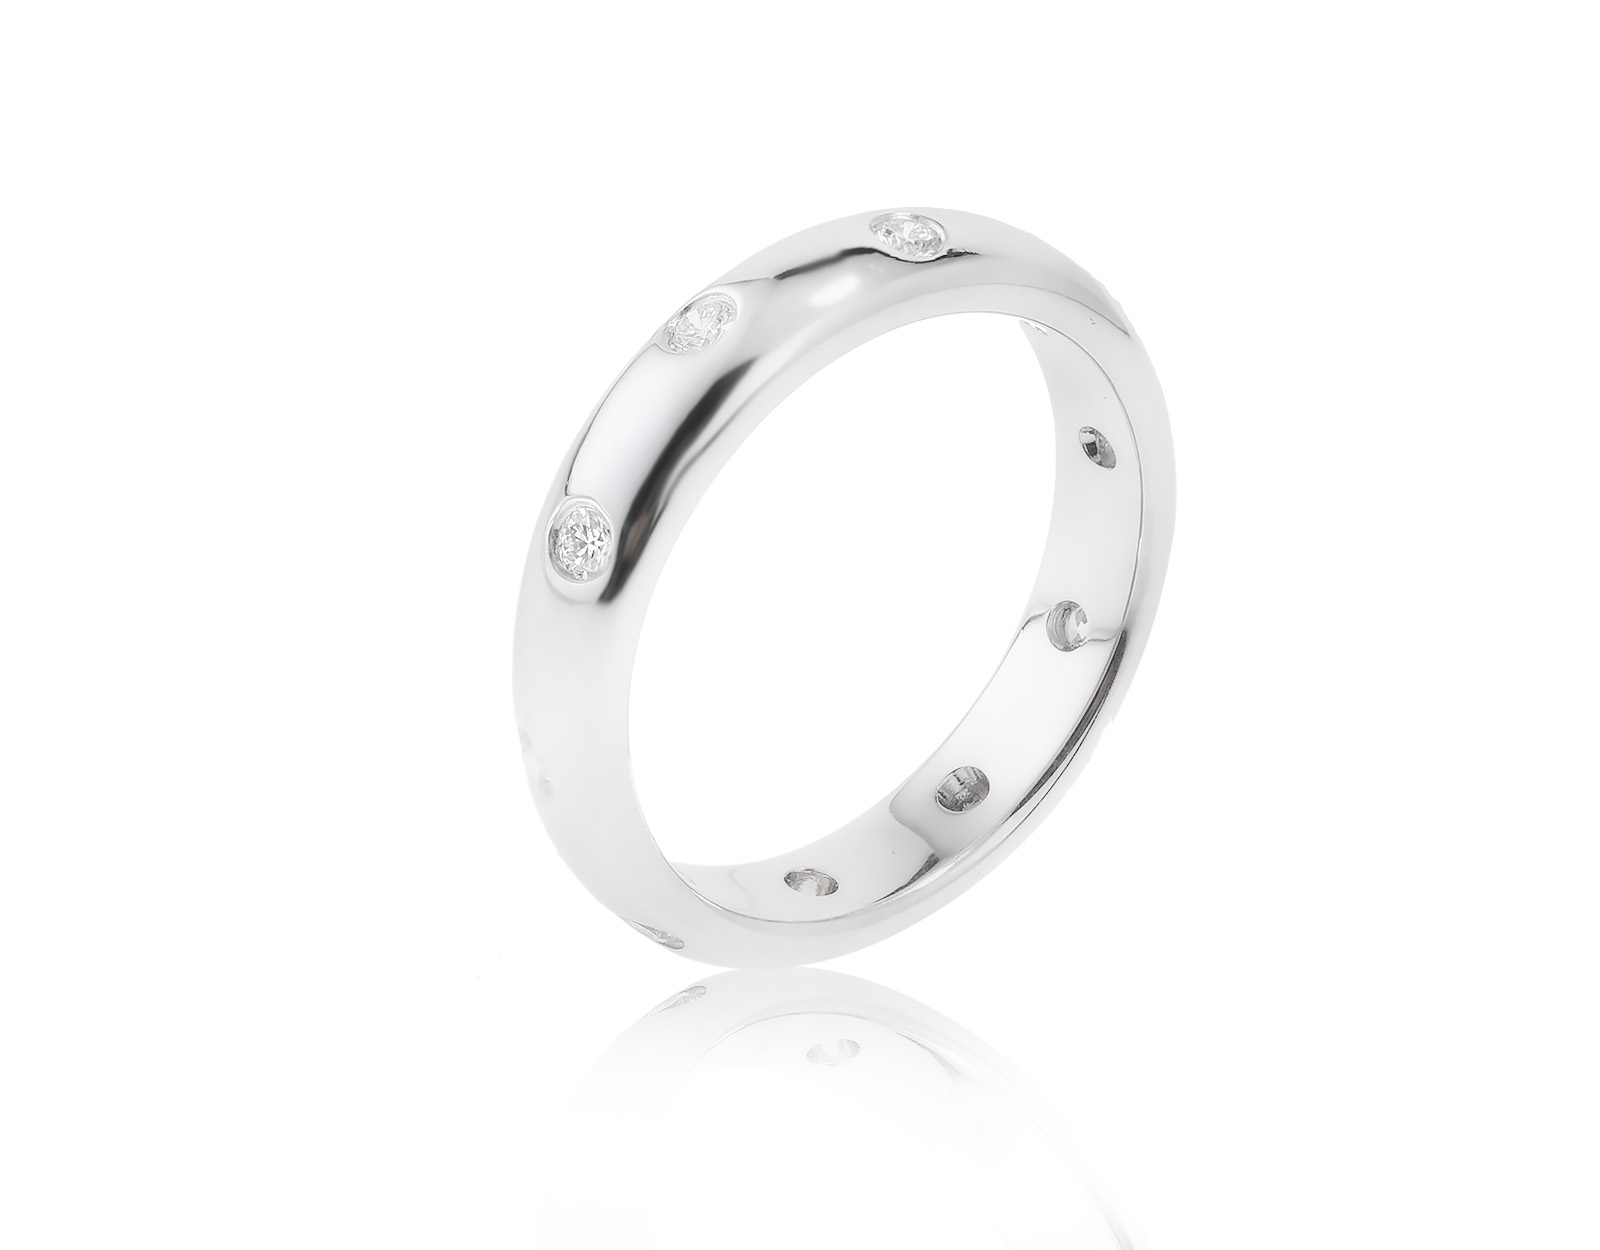 Оригинальное платиновое кольцо Tiffany&Co Etoile 160323/2